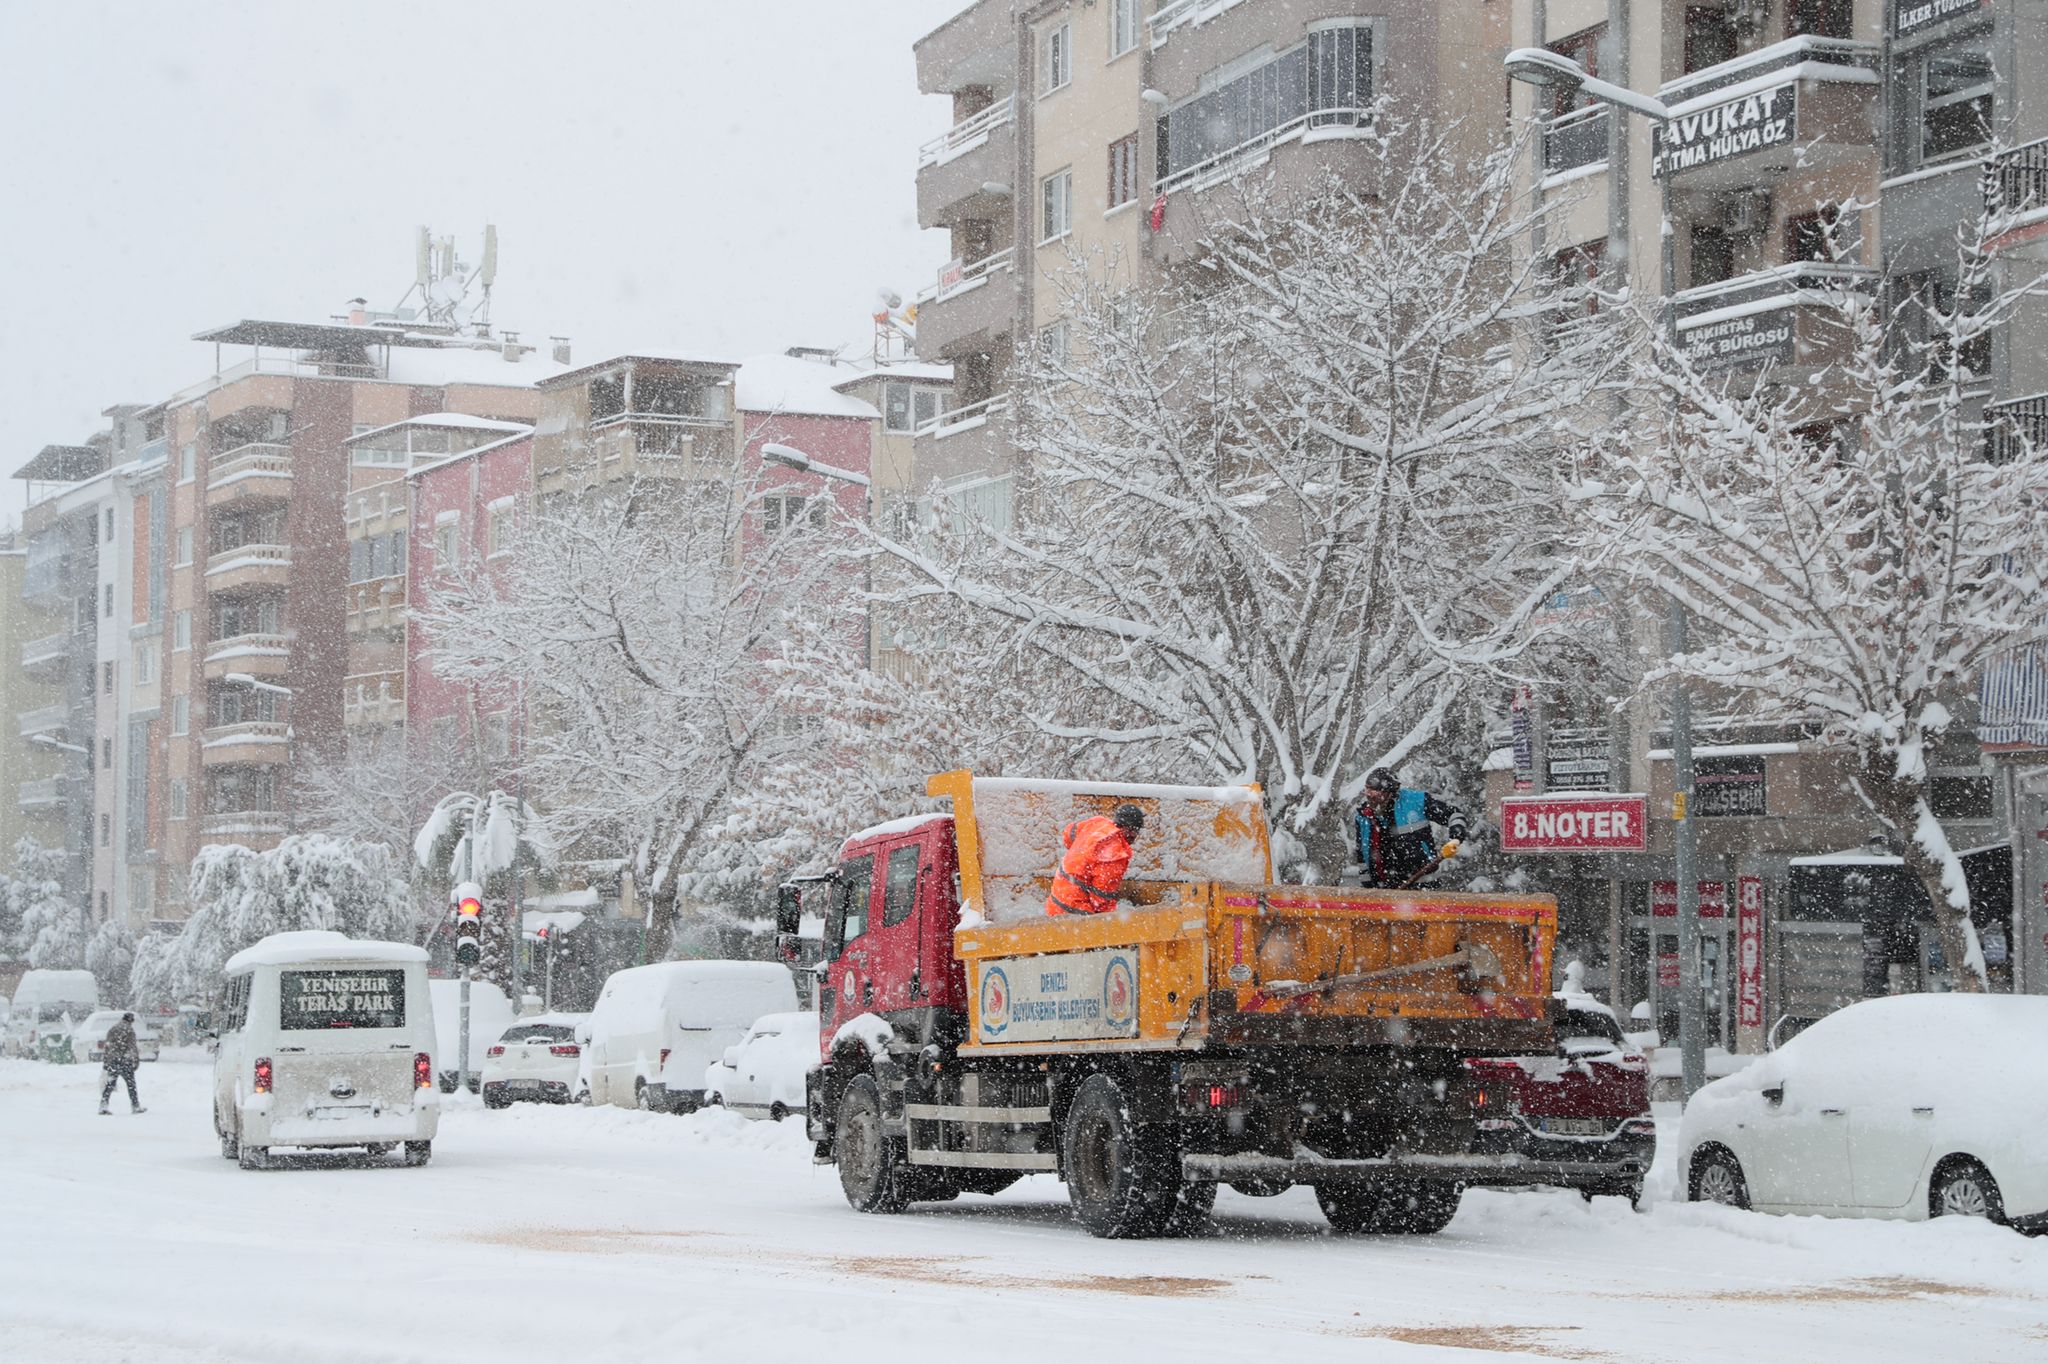 Buyuksehirin karla mucadelesi suruyor 4 - Büyükşehir'in Karla Mücadelesi Sürüyor